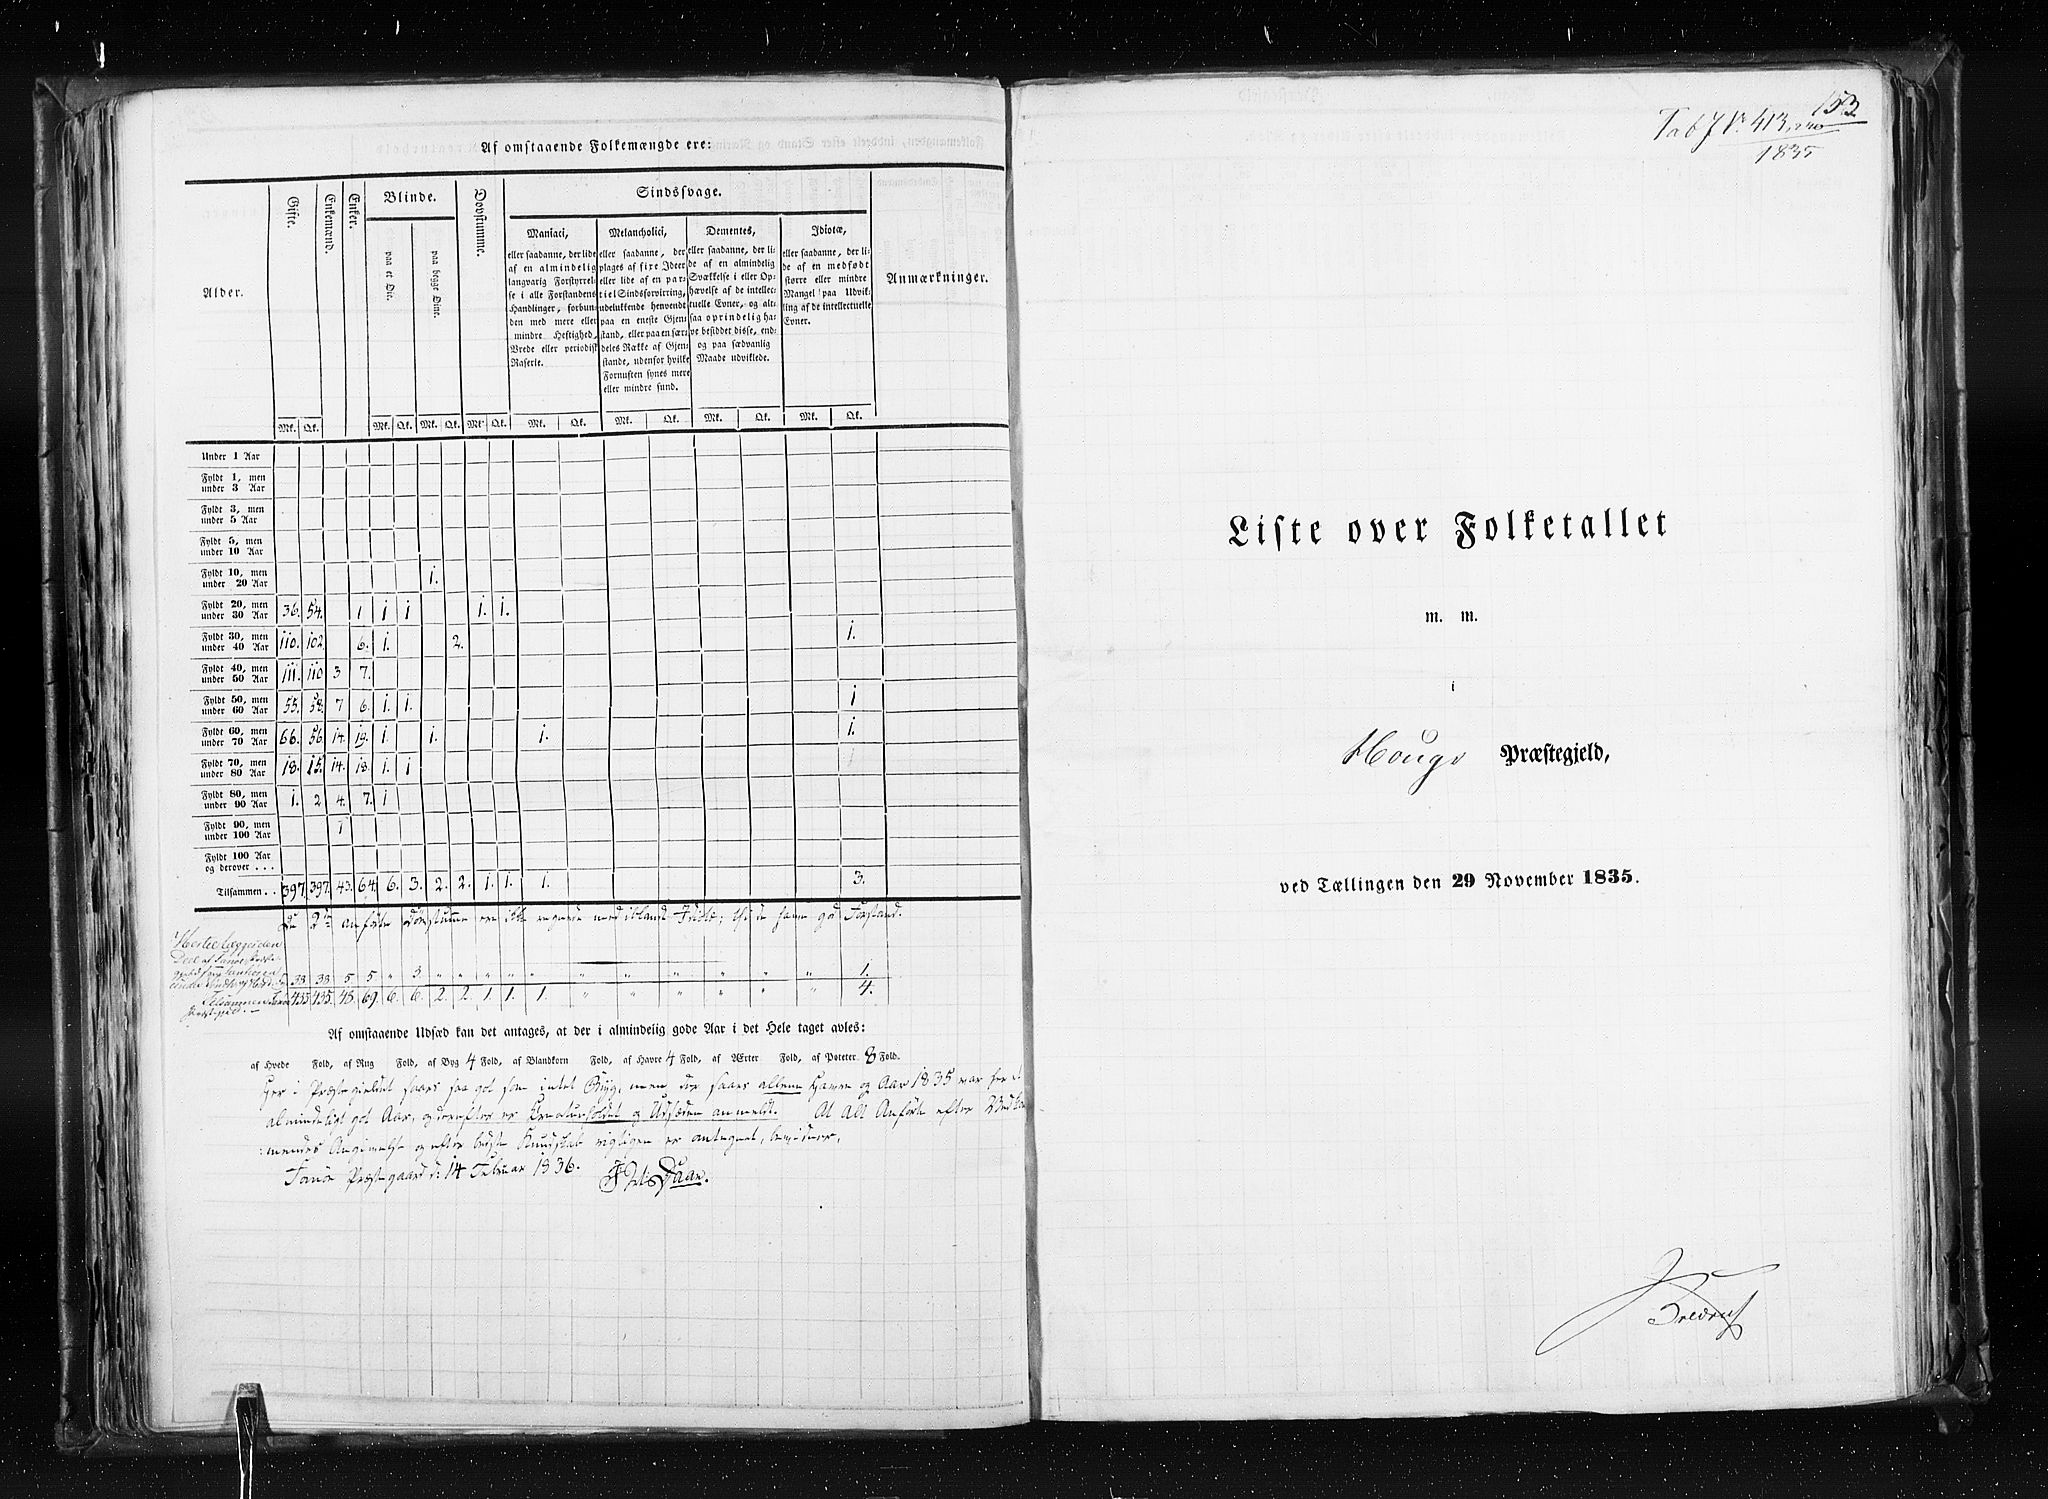 RA, Census 1835, vol. 7: Søndre Bergenhus amt og Nordre Bergenhus amt, 1835, p. 153